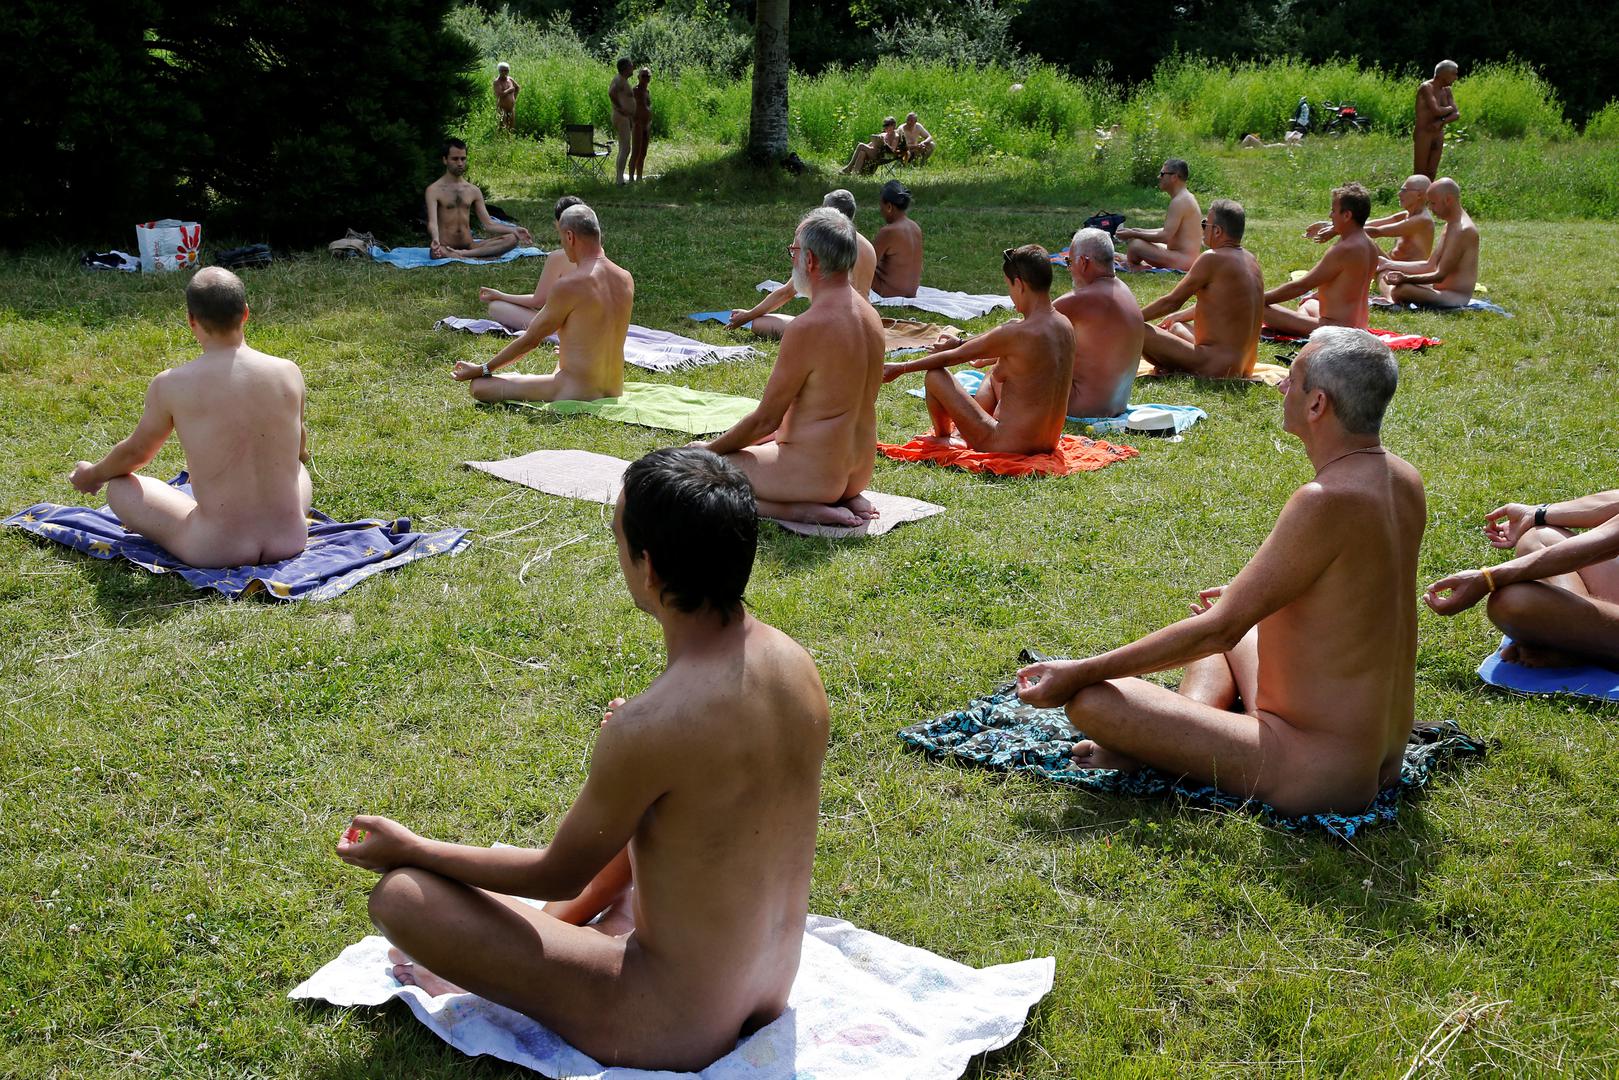 Organizatori nisu trebali stahovati hoće li se itko pojaviti na pikniku jer samo u Francuskoj ima 2.5 milijuna registriranih naturista.

